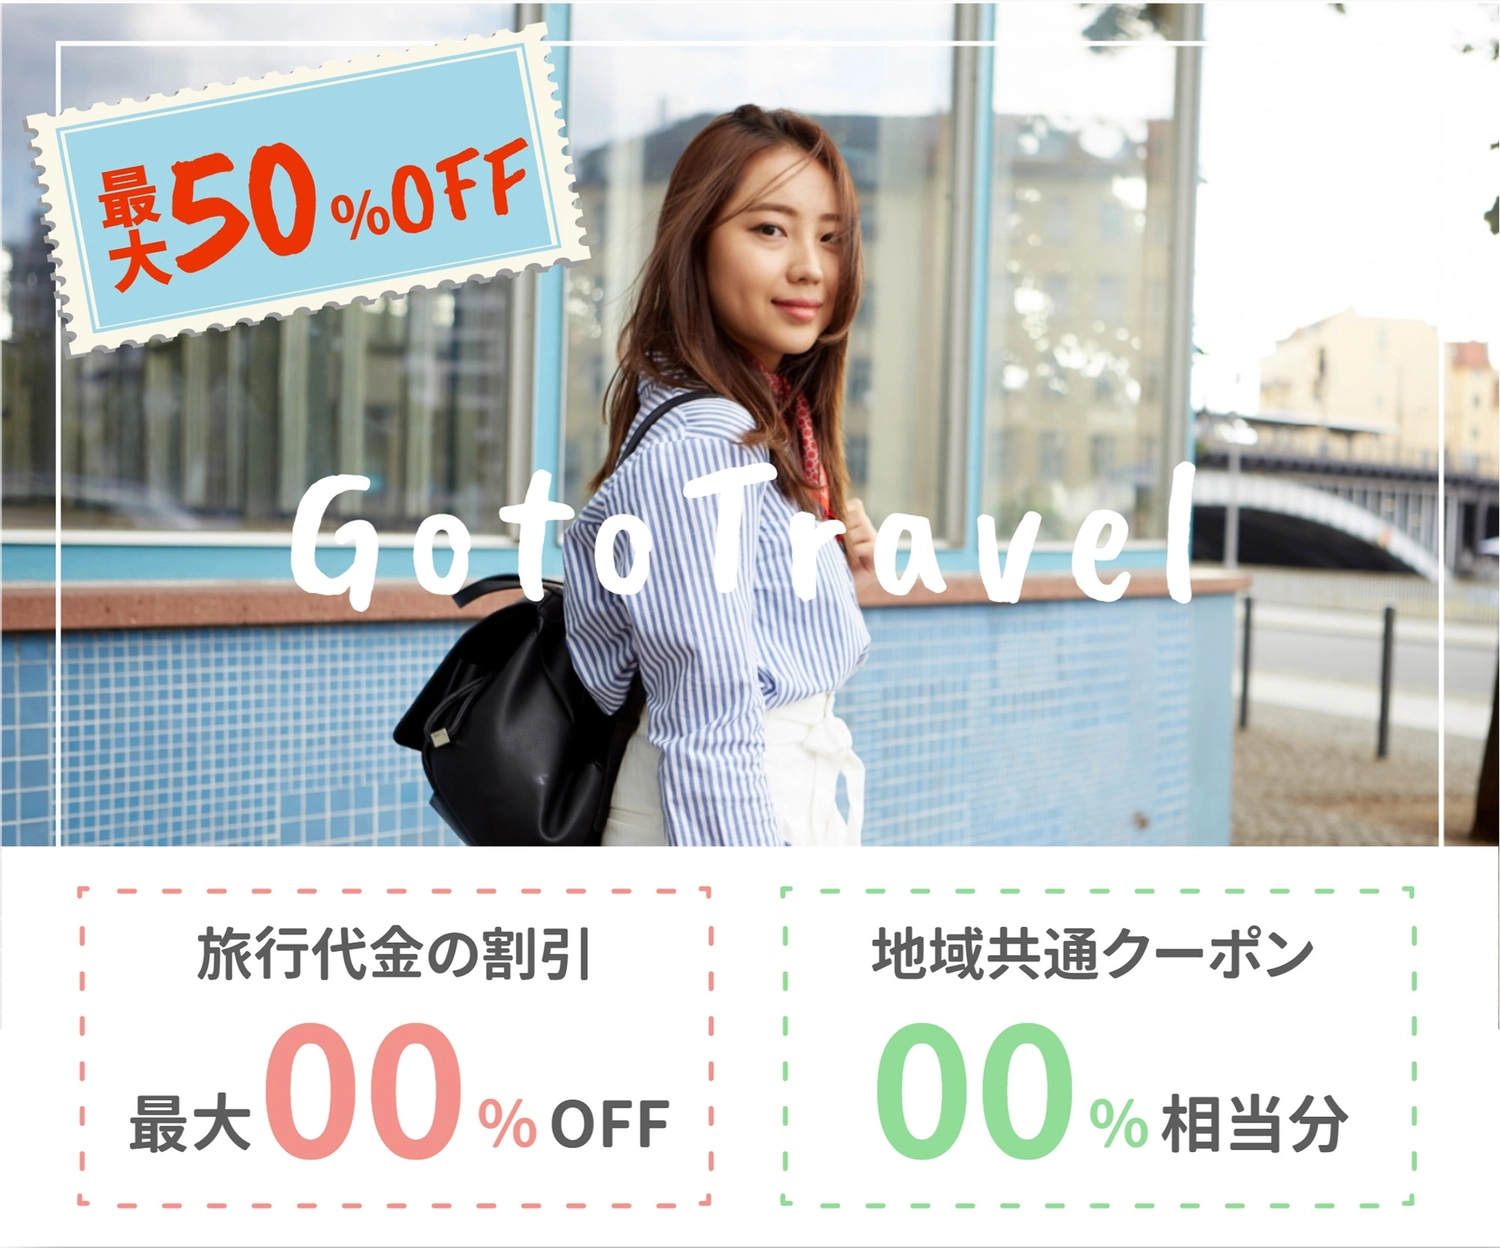 Gotoトラベルの広告バナー（写真）, 金額, 値引き, デザイン, バナーテンプレート